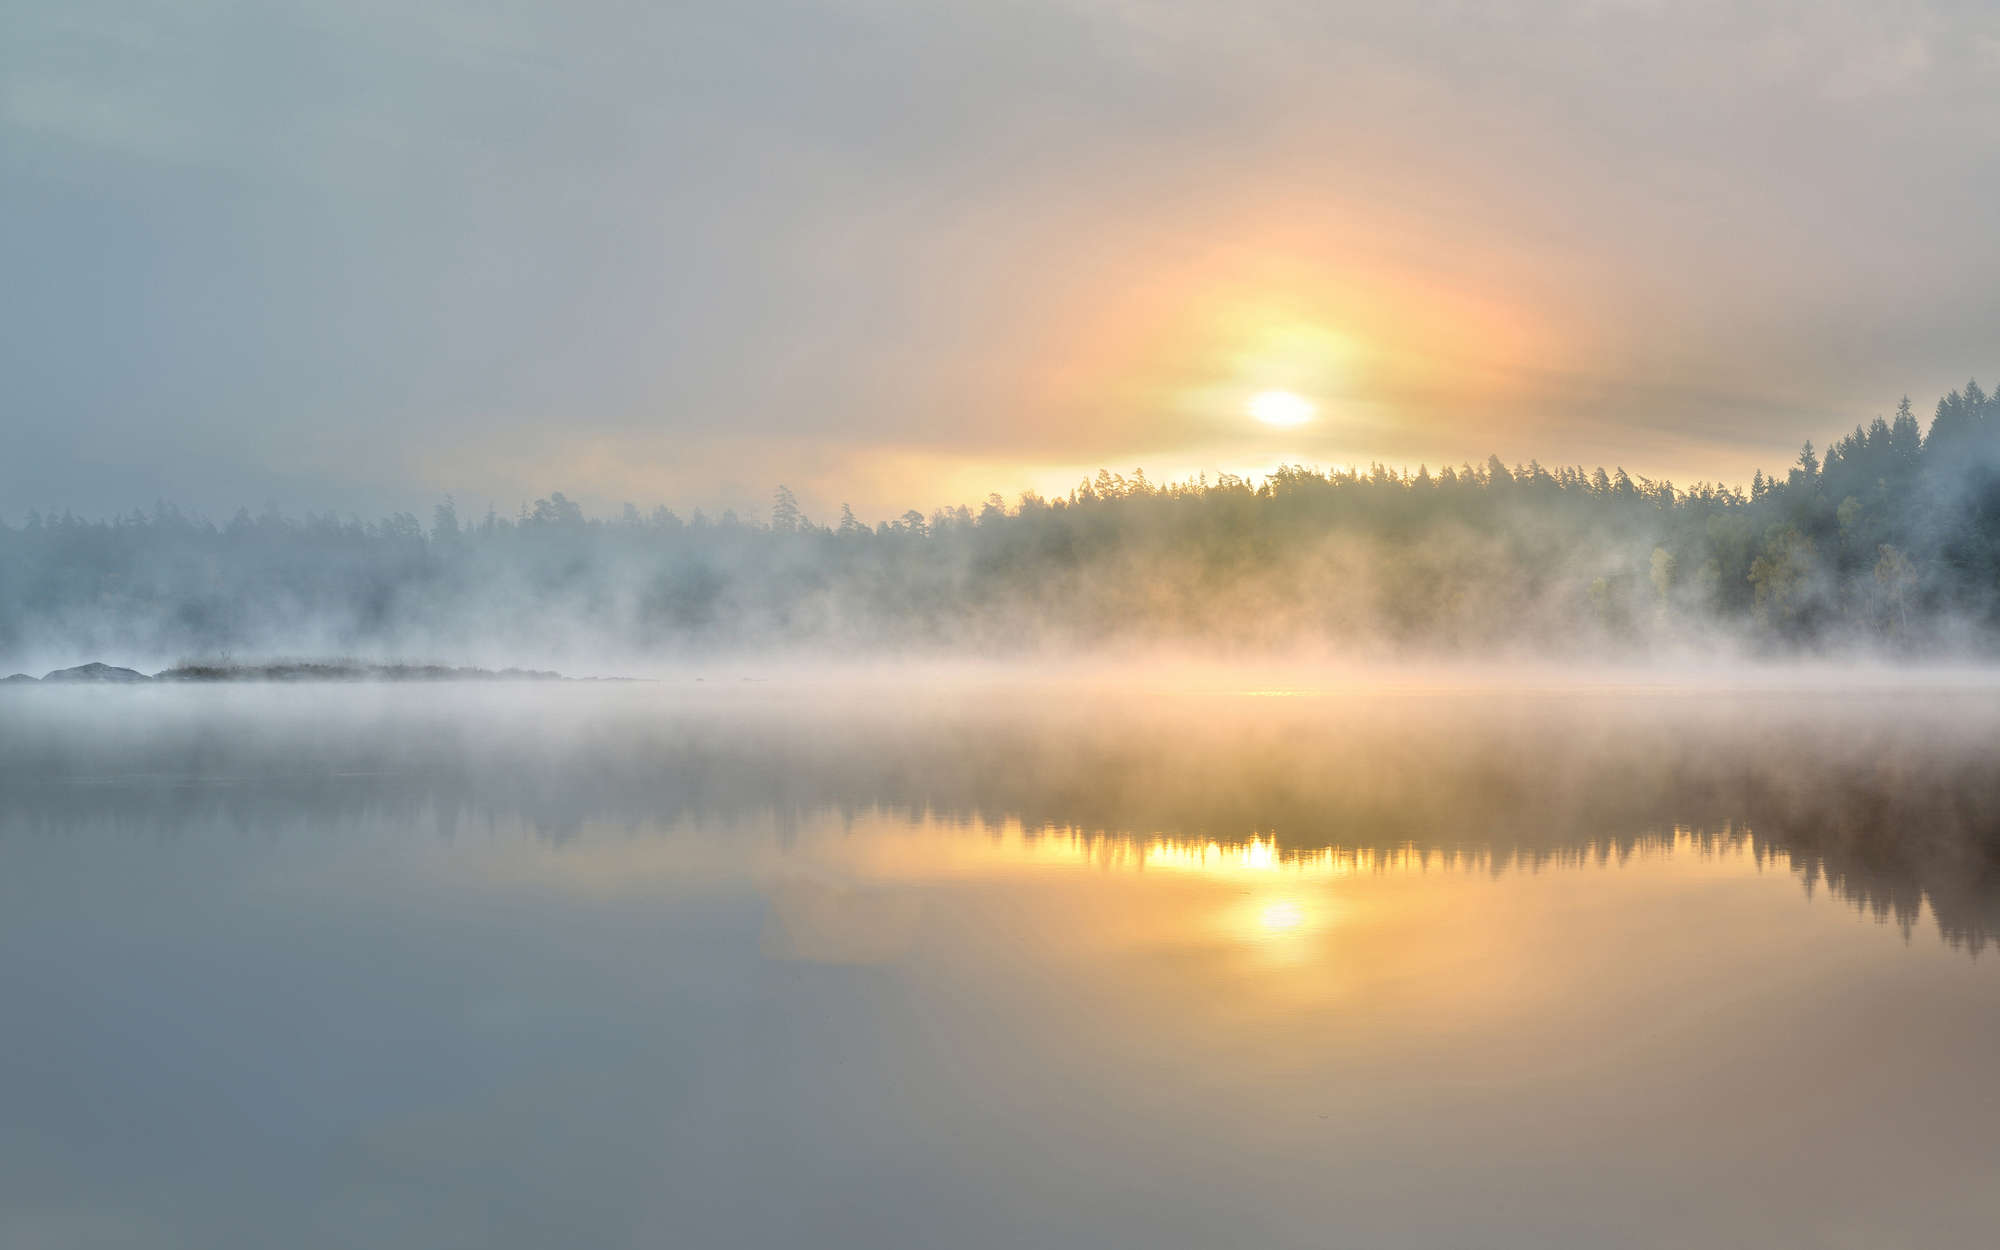             Digital behang mistige ochtend aan het meer - parelmoer glad vlies
        